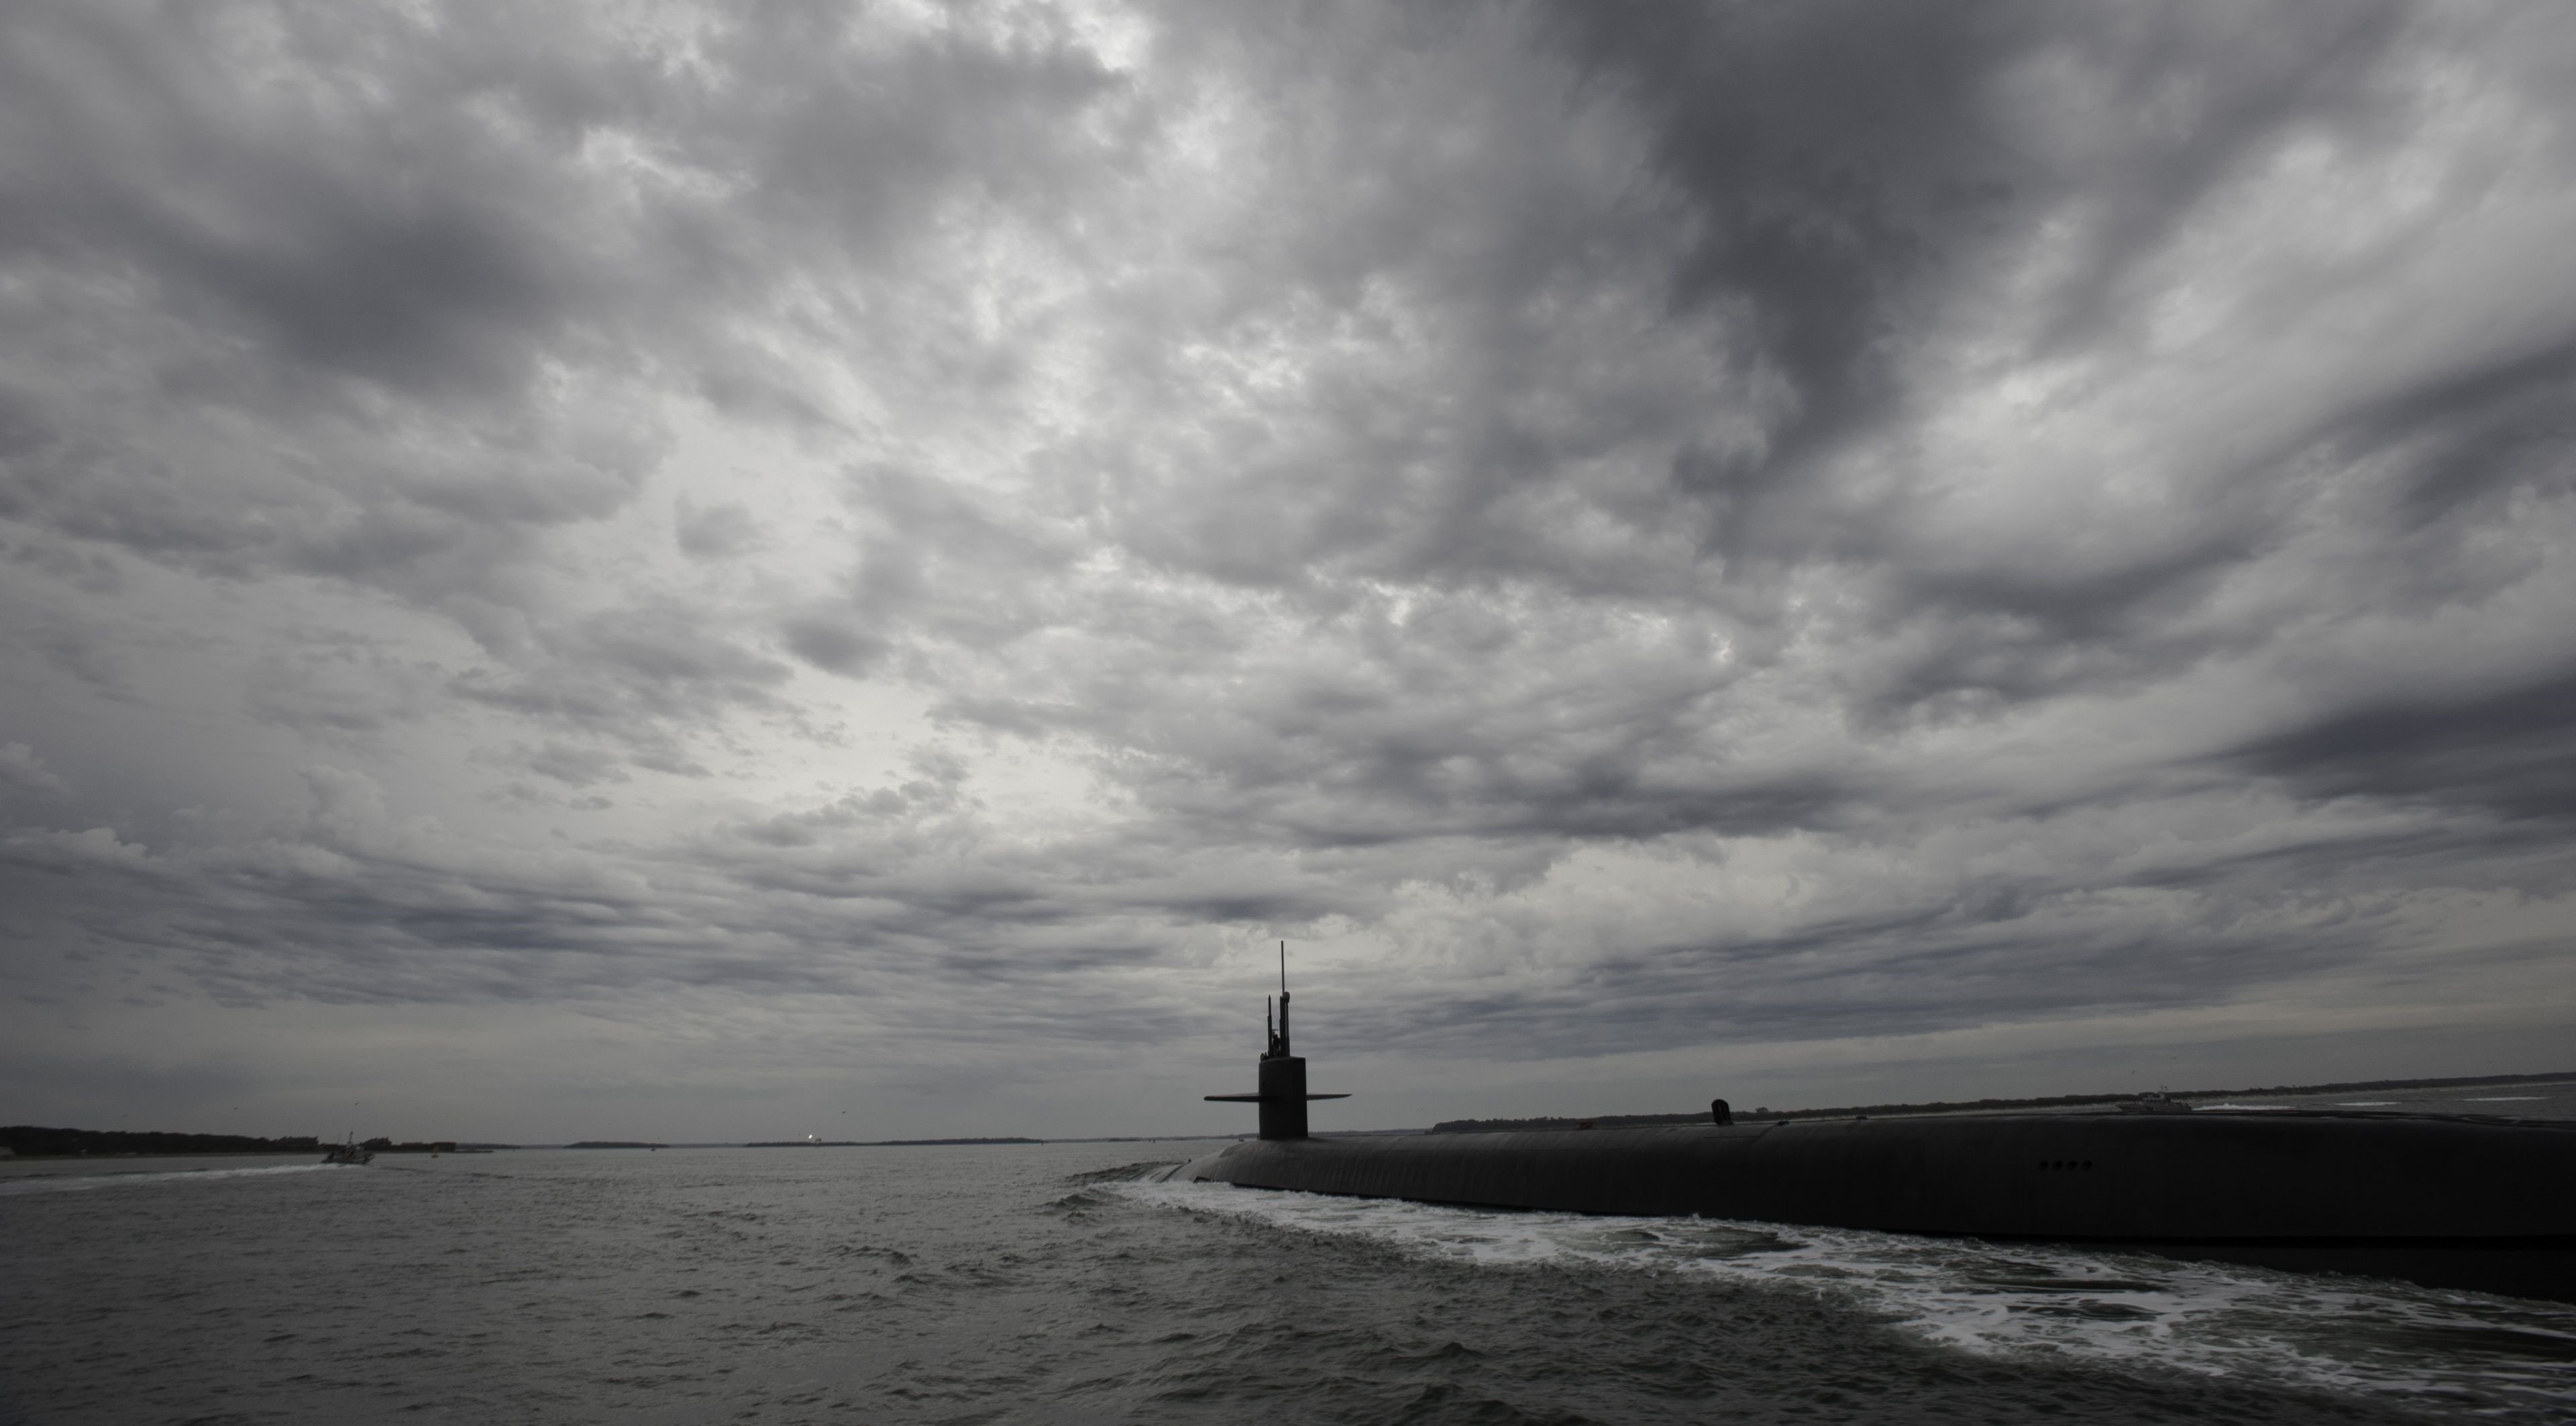  عکس فوق العاده جالب از زیردریایی با هوای طوفانی 